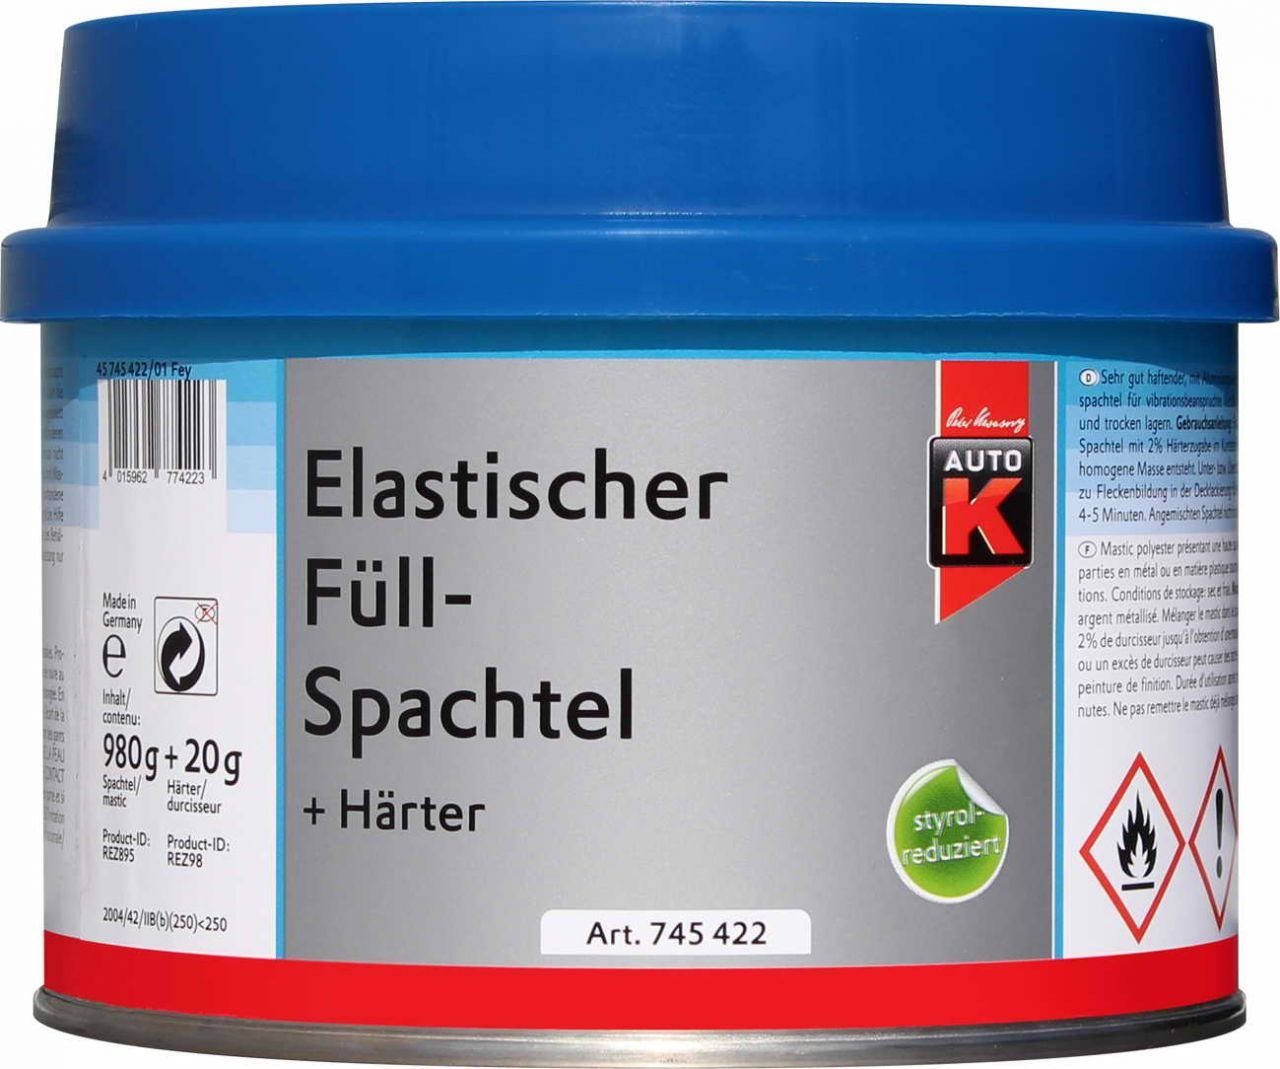 Auto-K Auto-K Härter 1000g Füllspachtel + Breitspachtel Elastischer